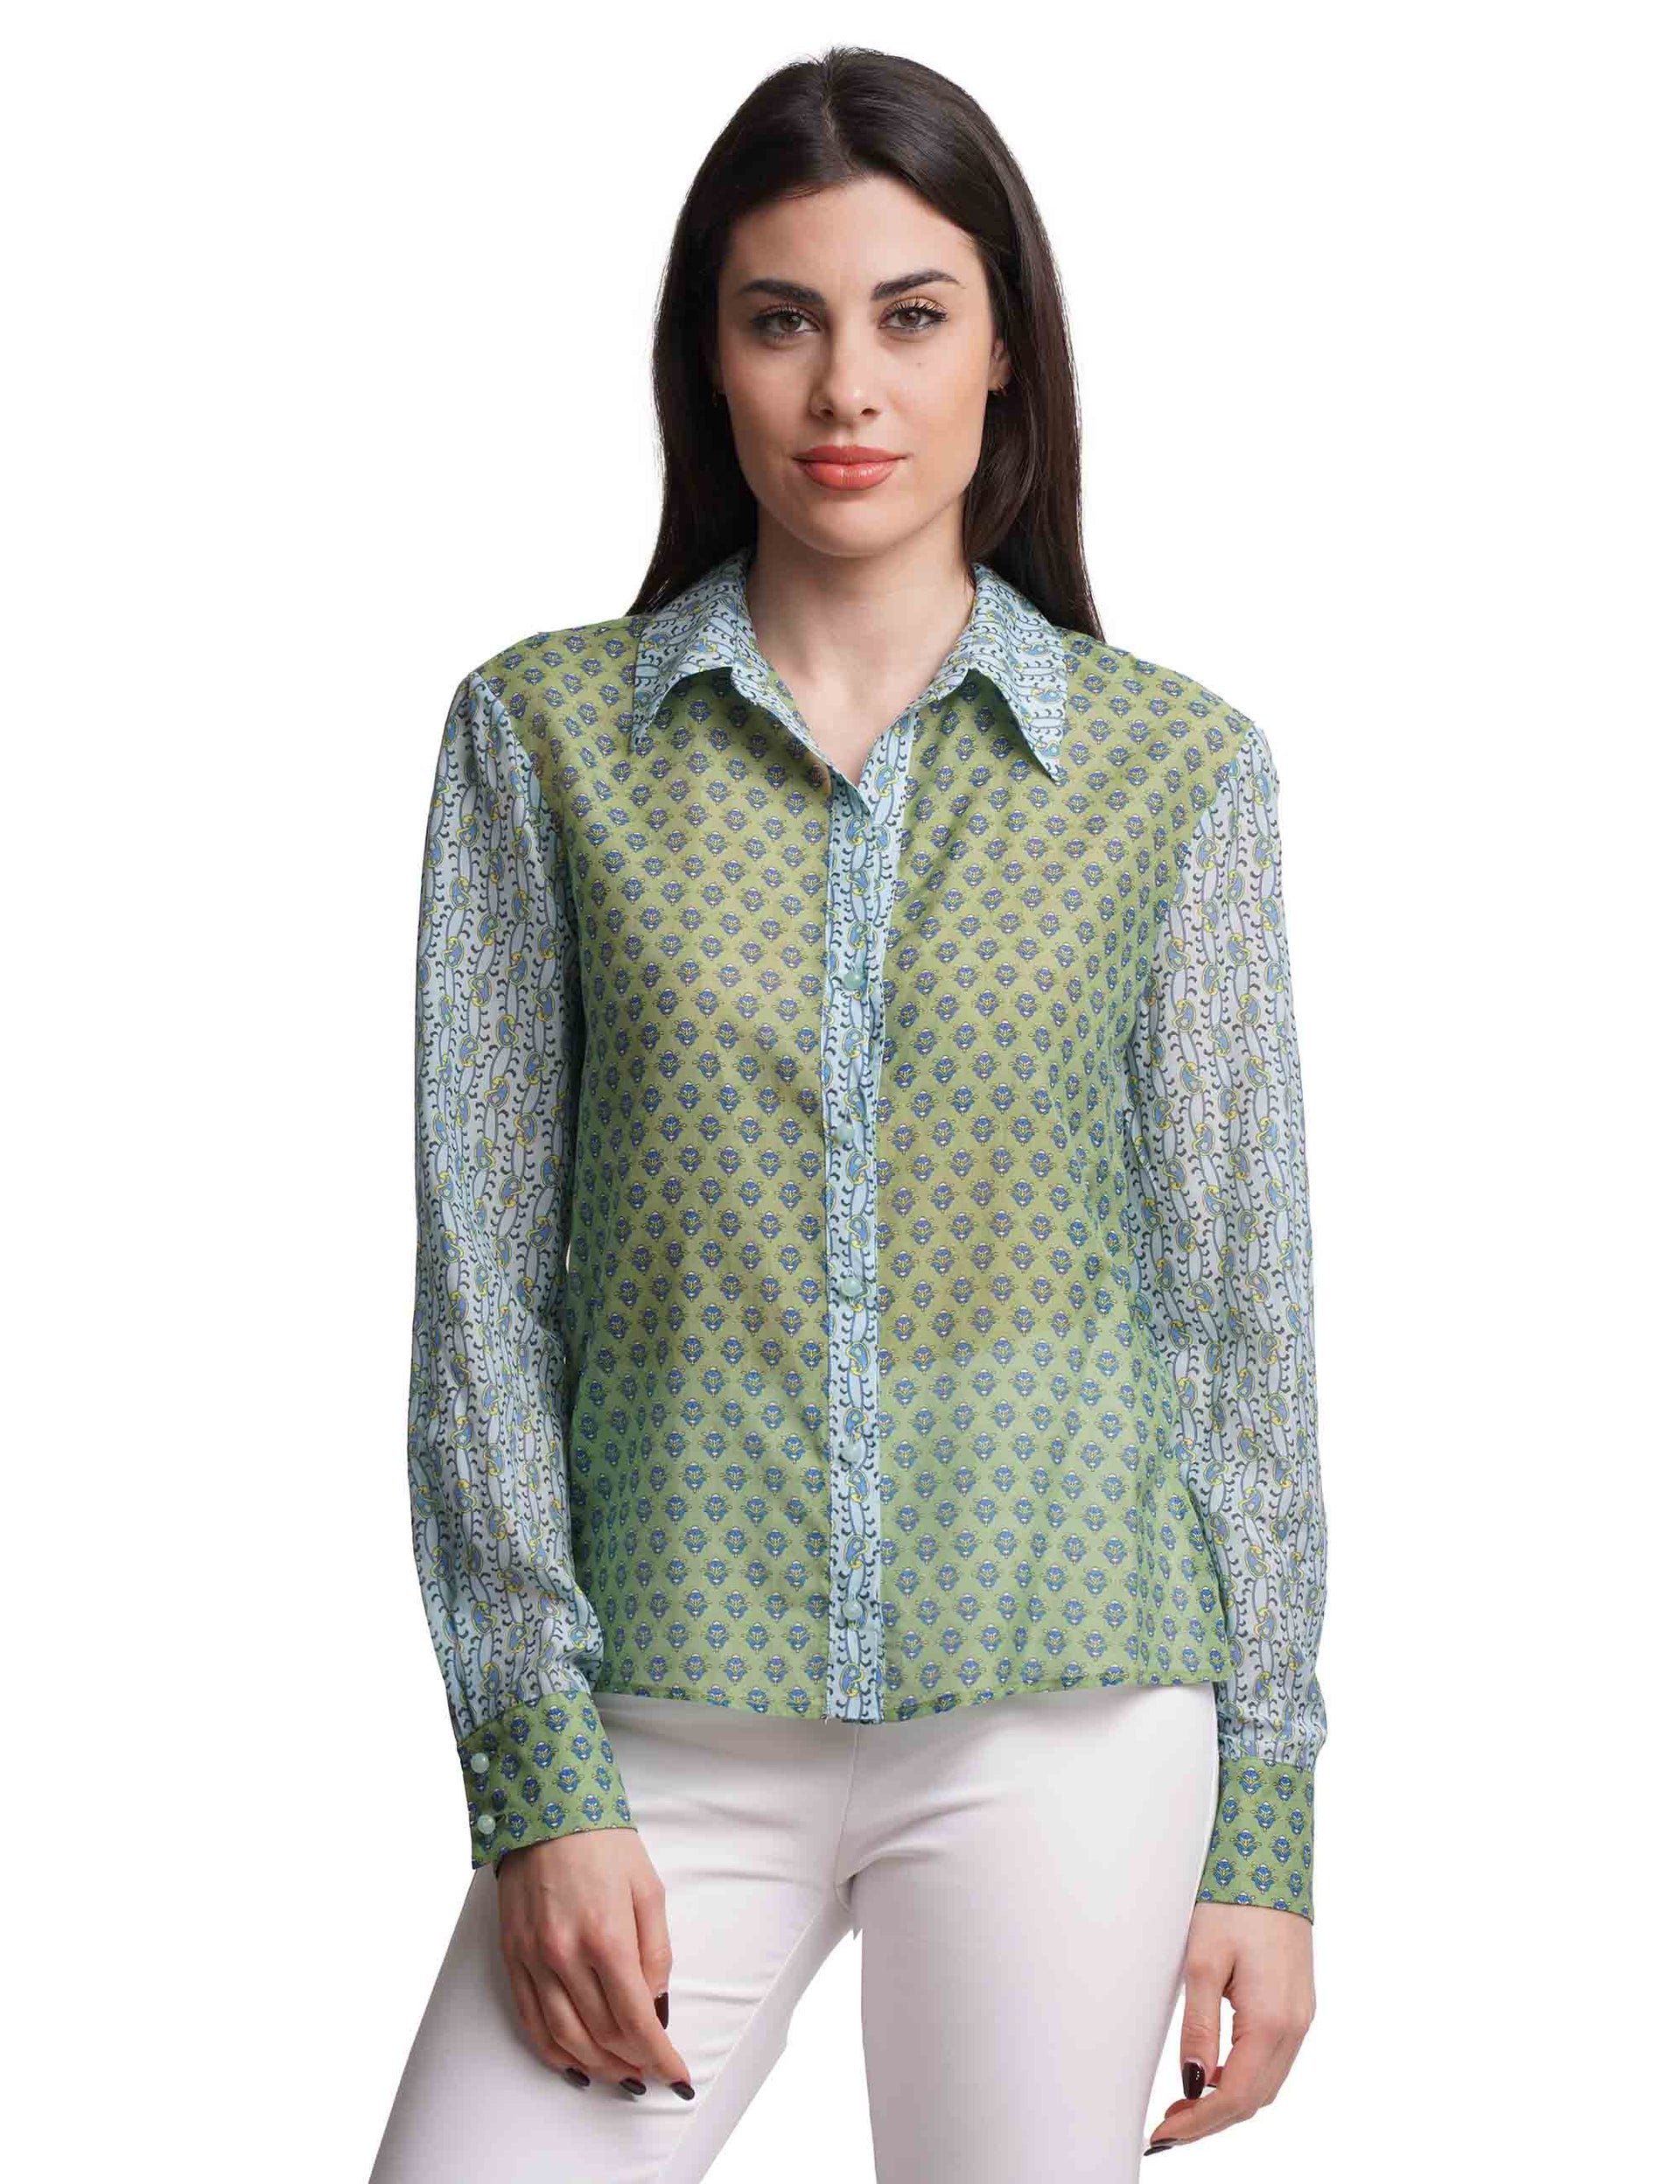 Silky Muslin women's shirts in green patterned silk blend